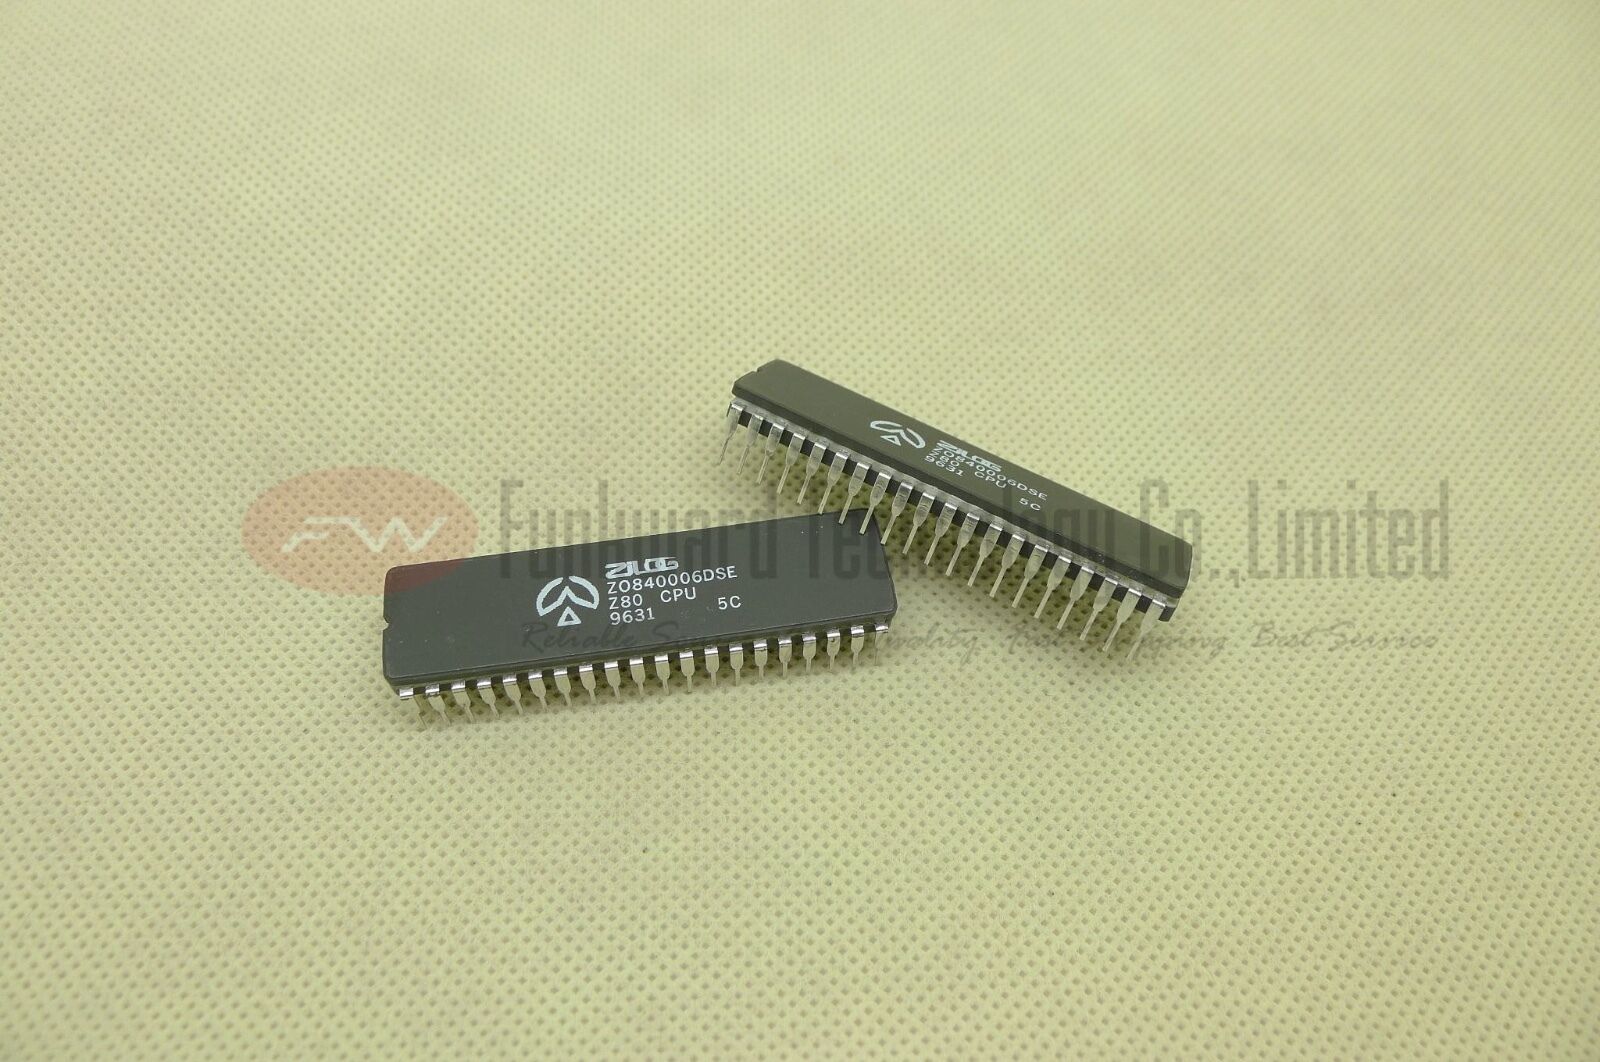 Zilog Z0840006DSE Z80 CPU Vintage NMOS/CMOS CPU CDIP40 x2PCS